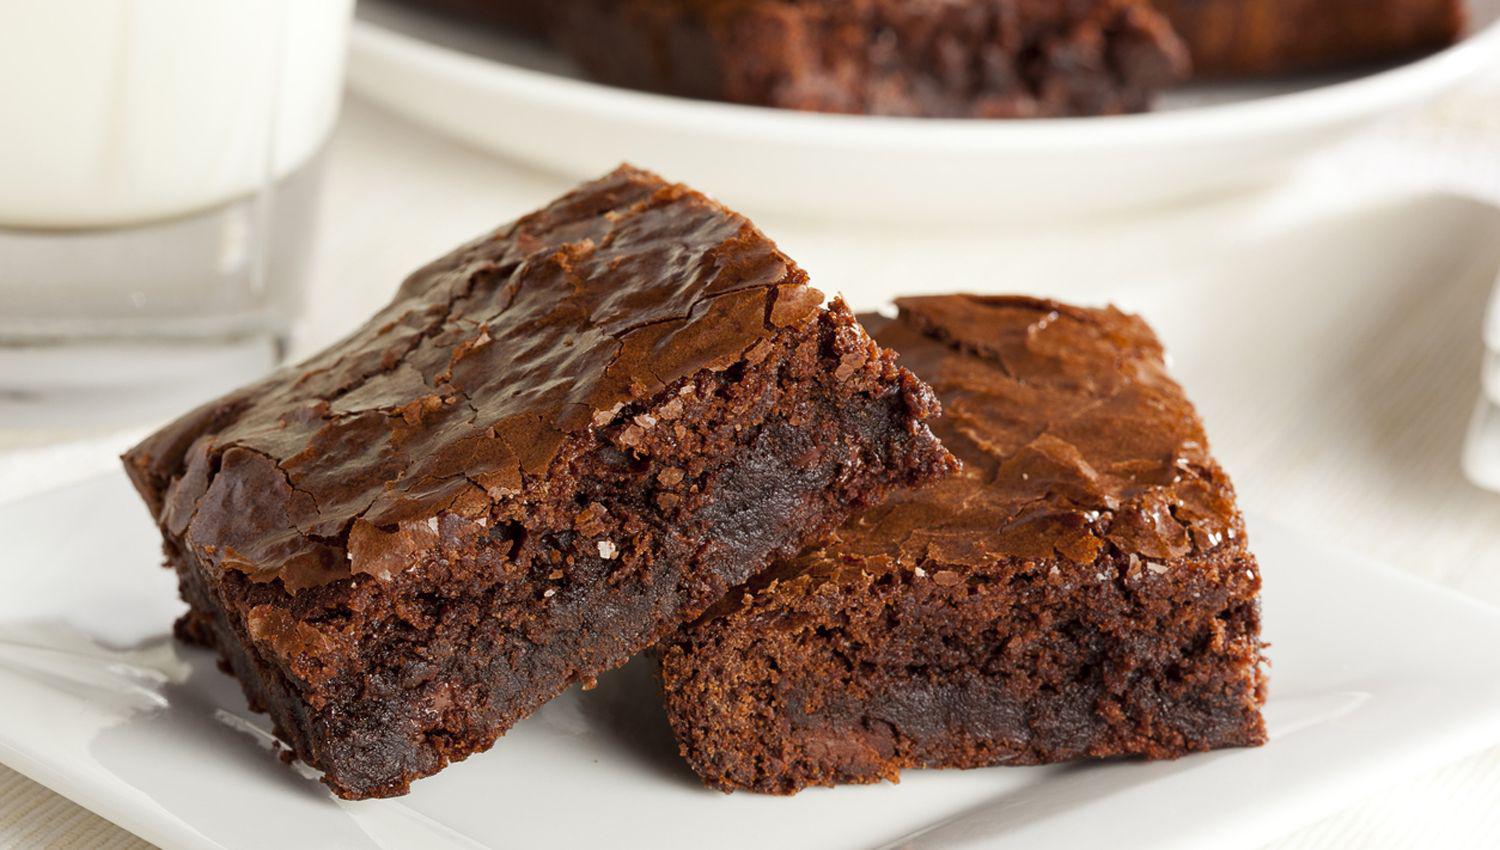 Brownies receta original y sin gluten- coacutemo hacerlos en casa